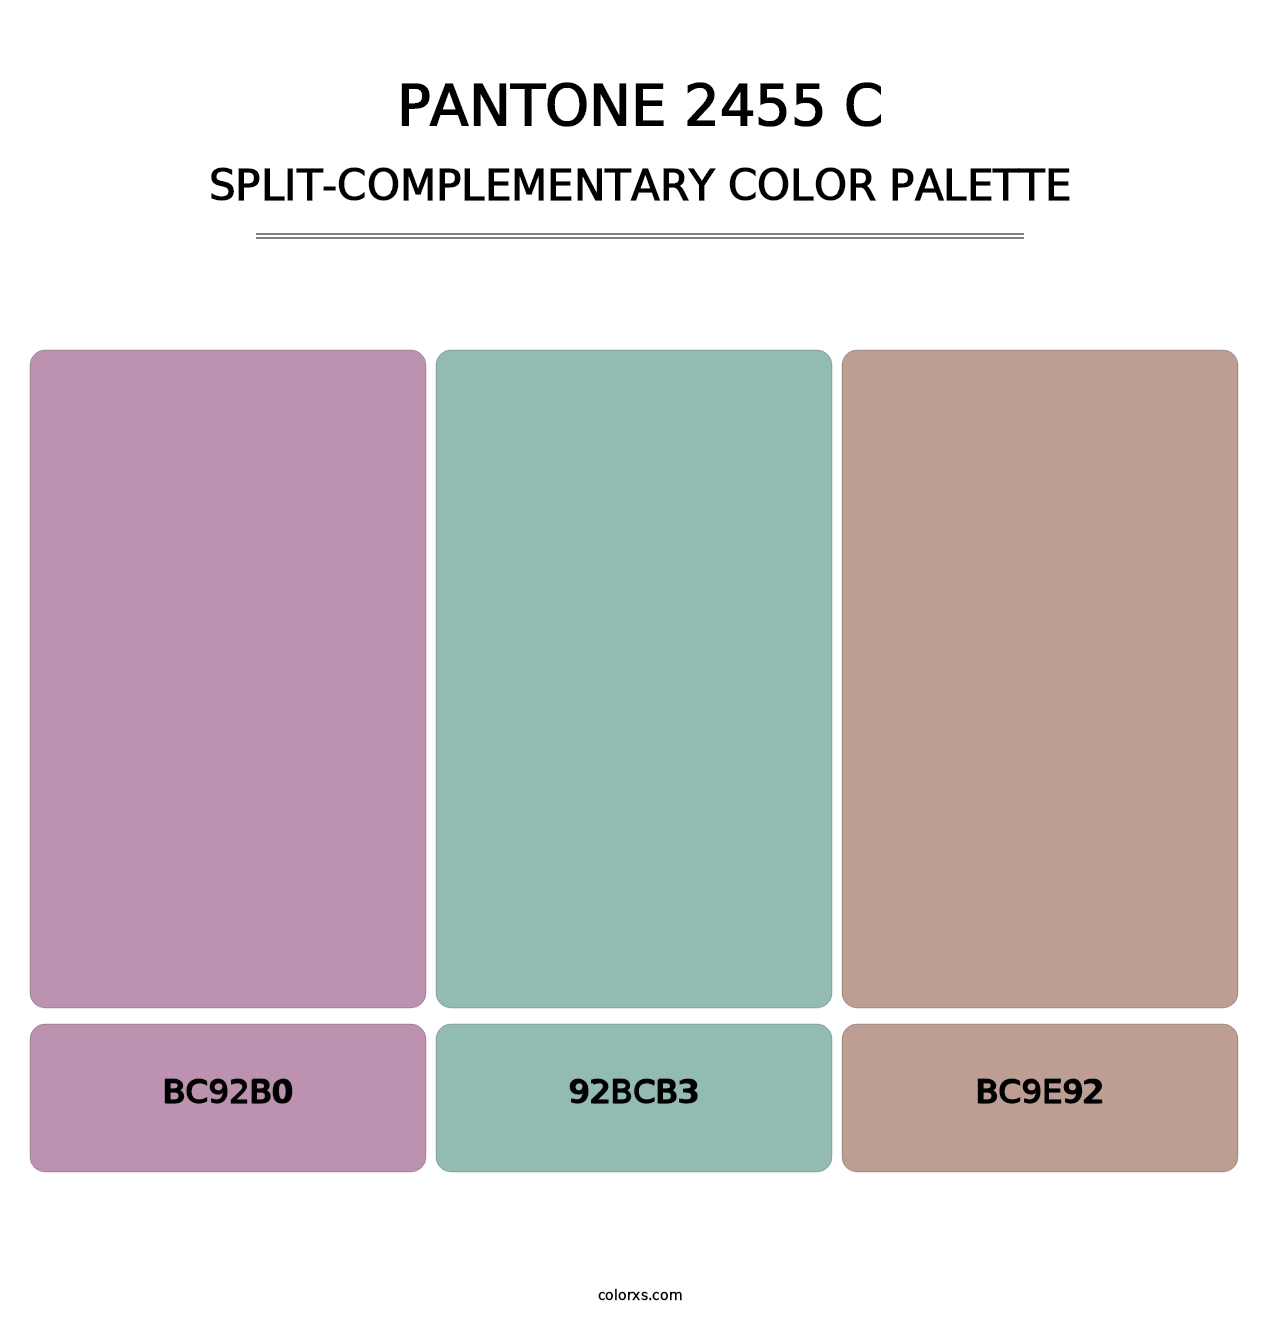 PANTONE 2455 C - Split-Complementary Color Palette